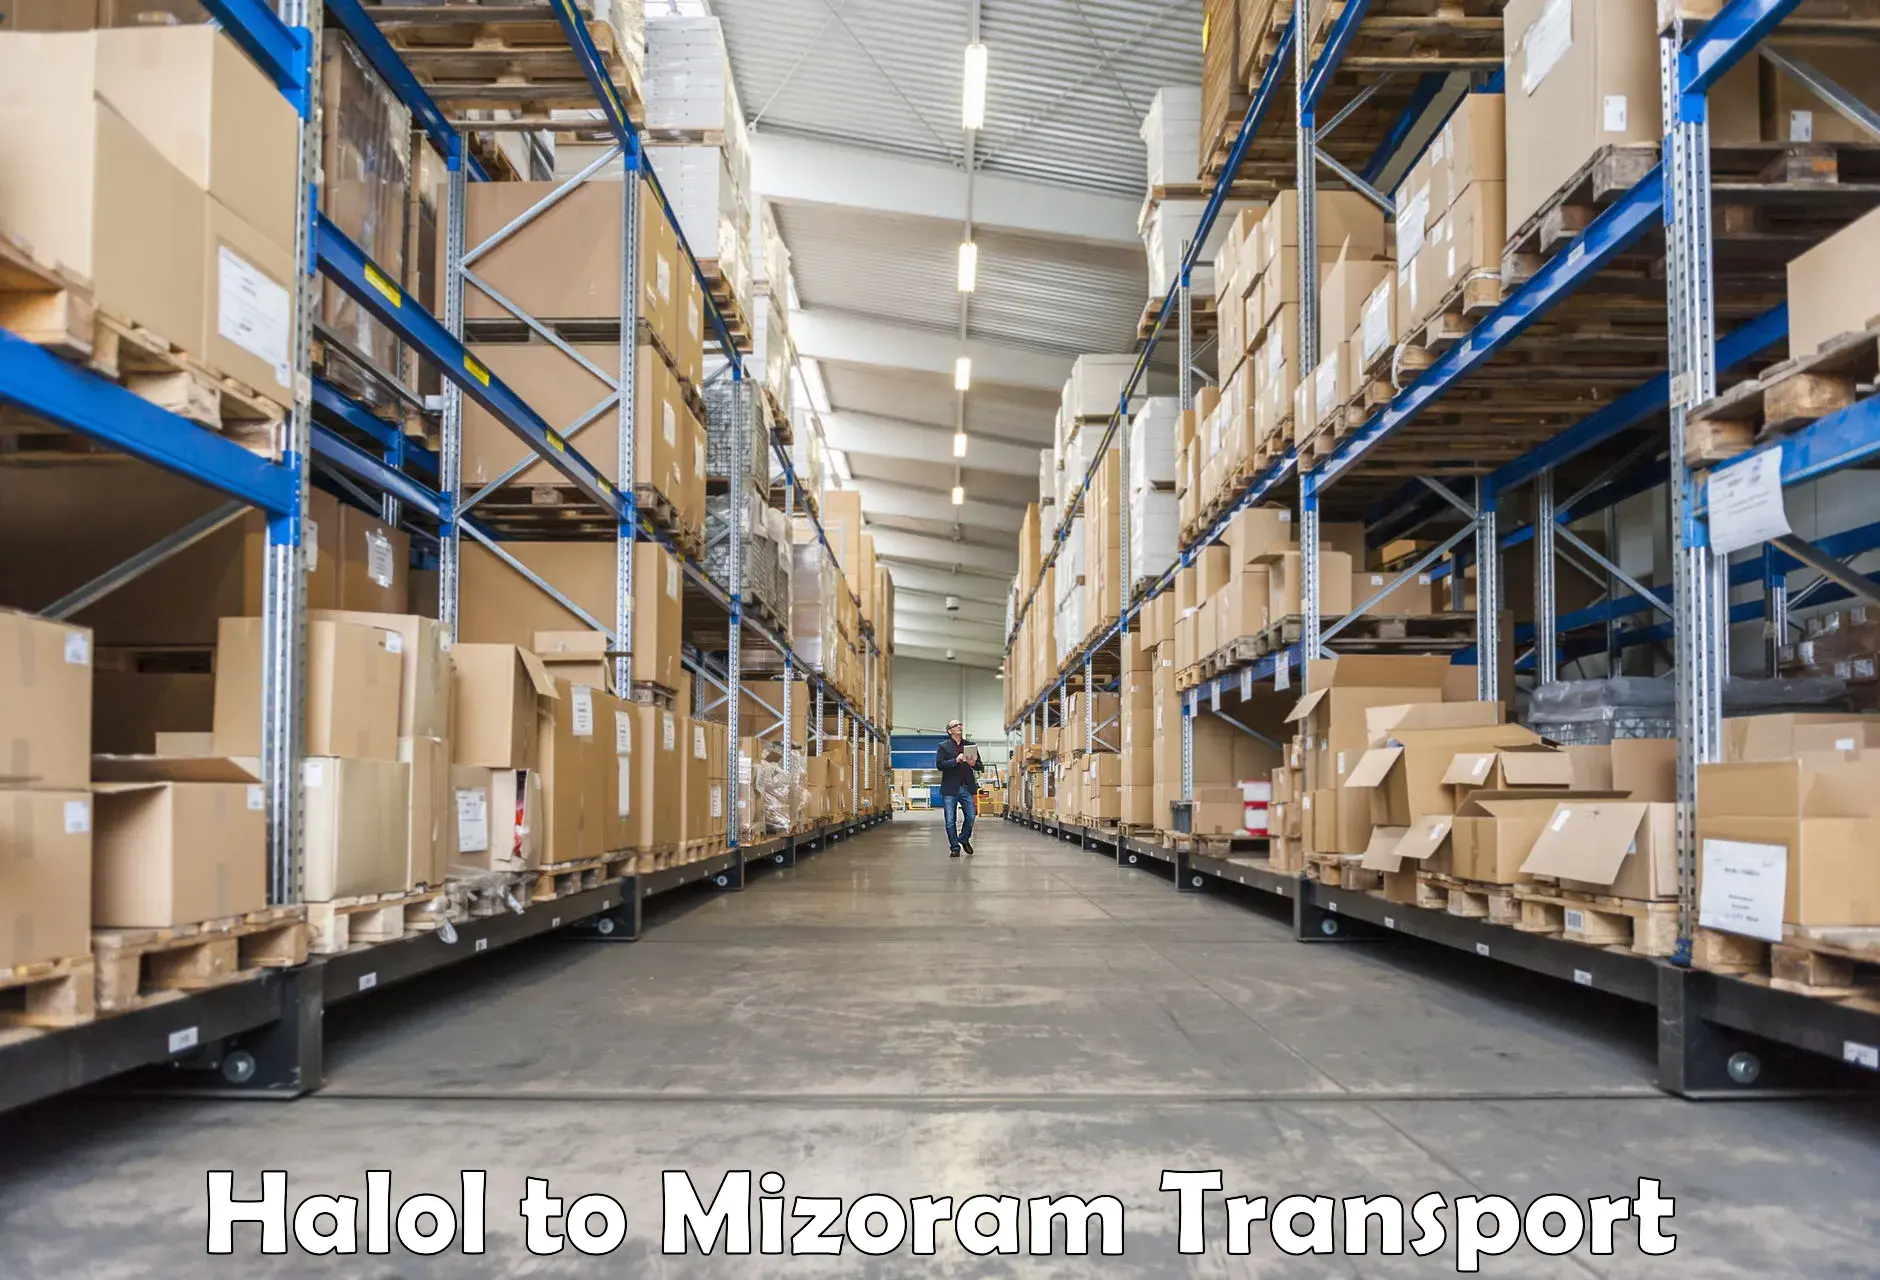 Online transport booking Halol to Mizoram